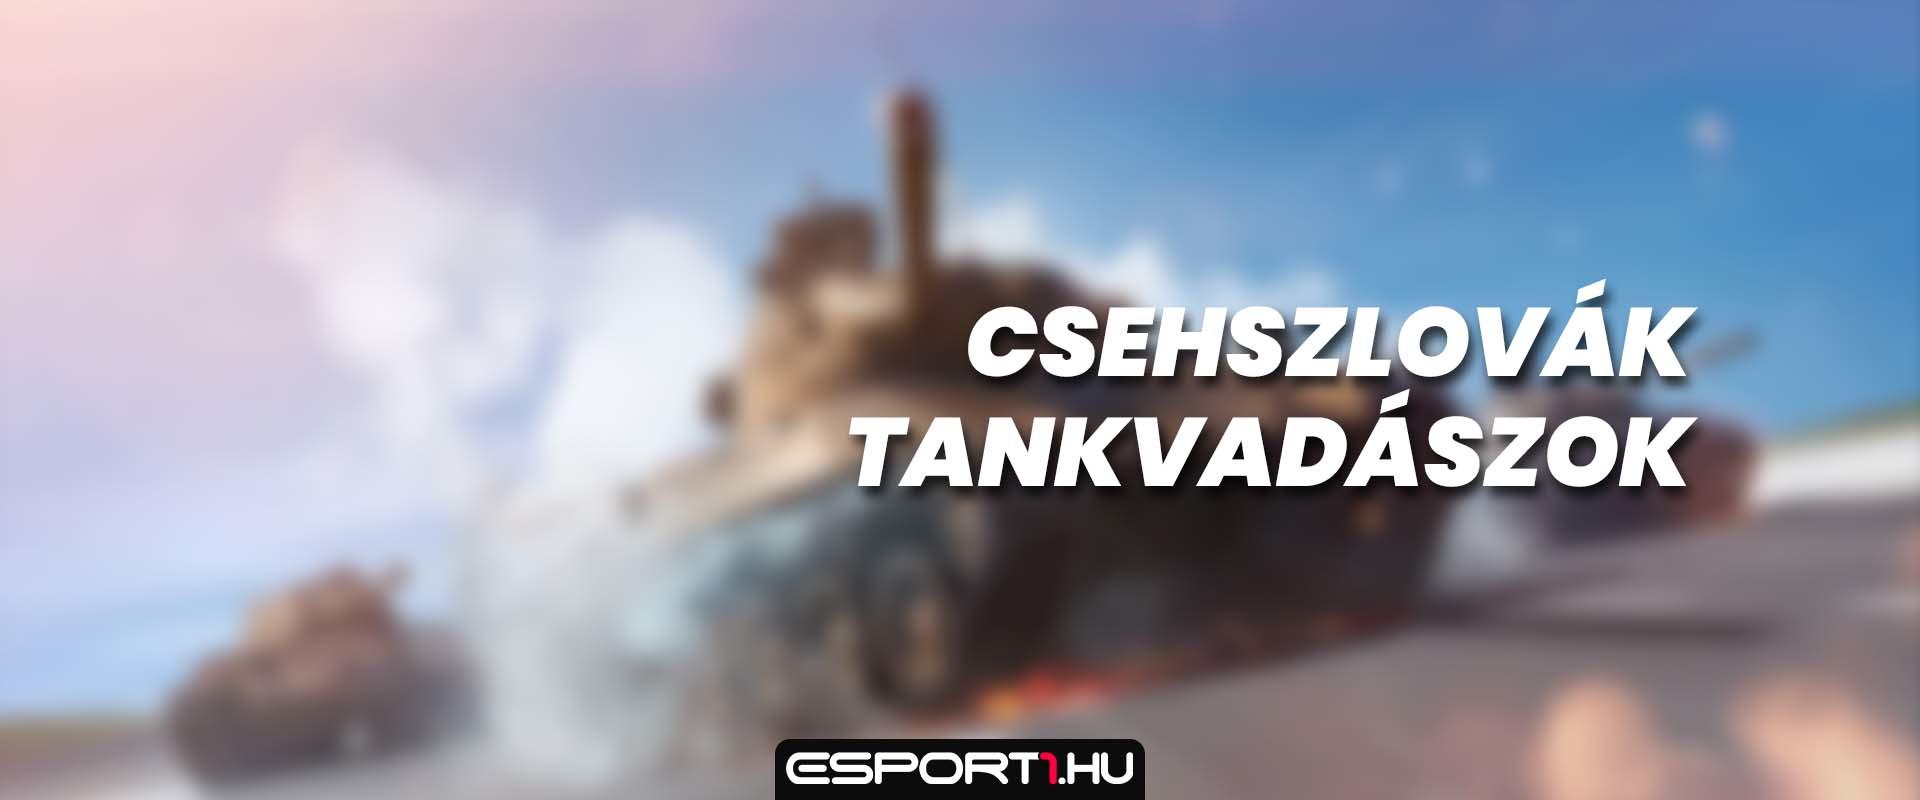 Érkeznek a csehszlovák tankvadászok?